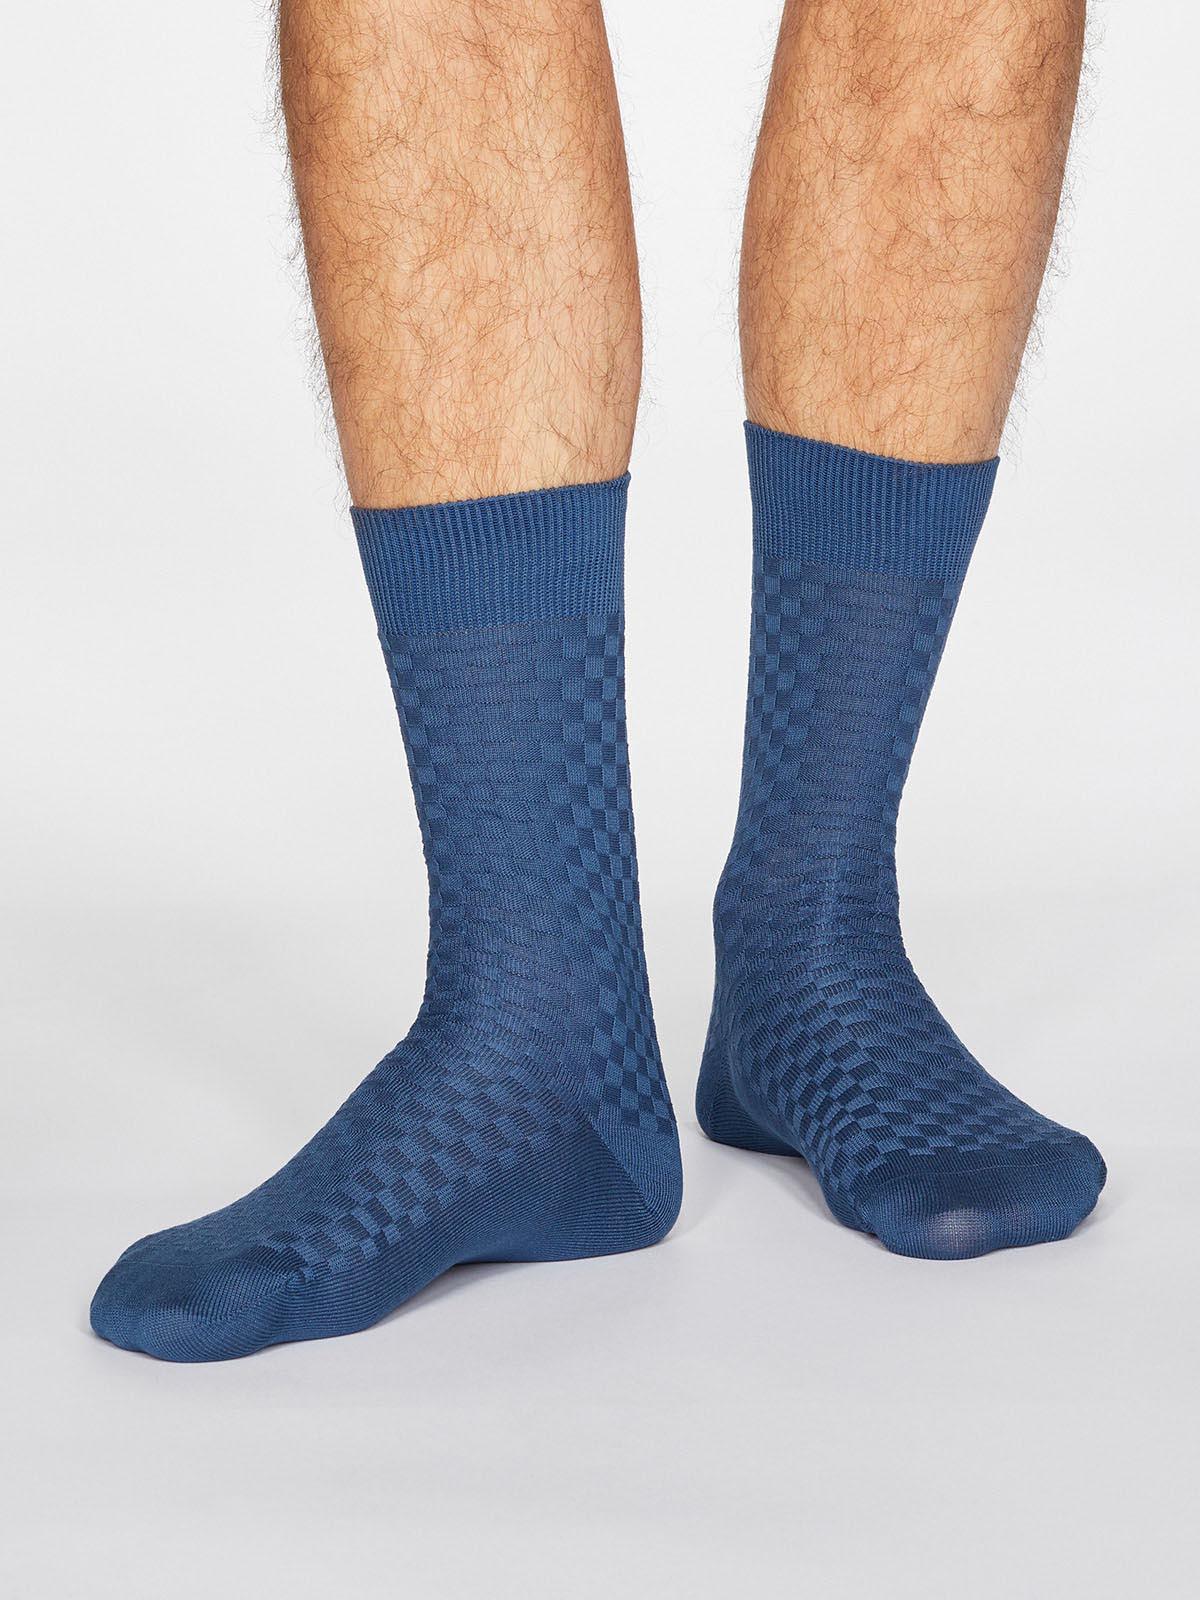 Cameron Dress Socks - Denim Blue - Thought Clothing UK